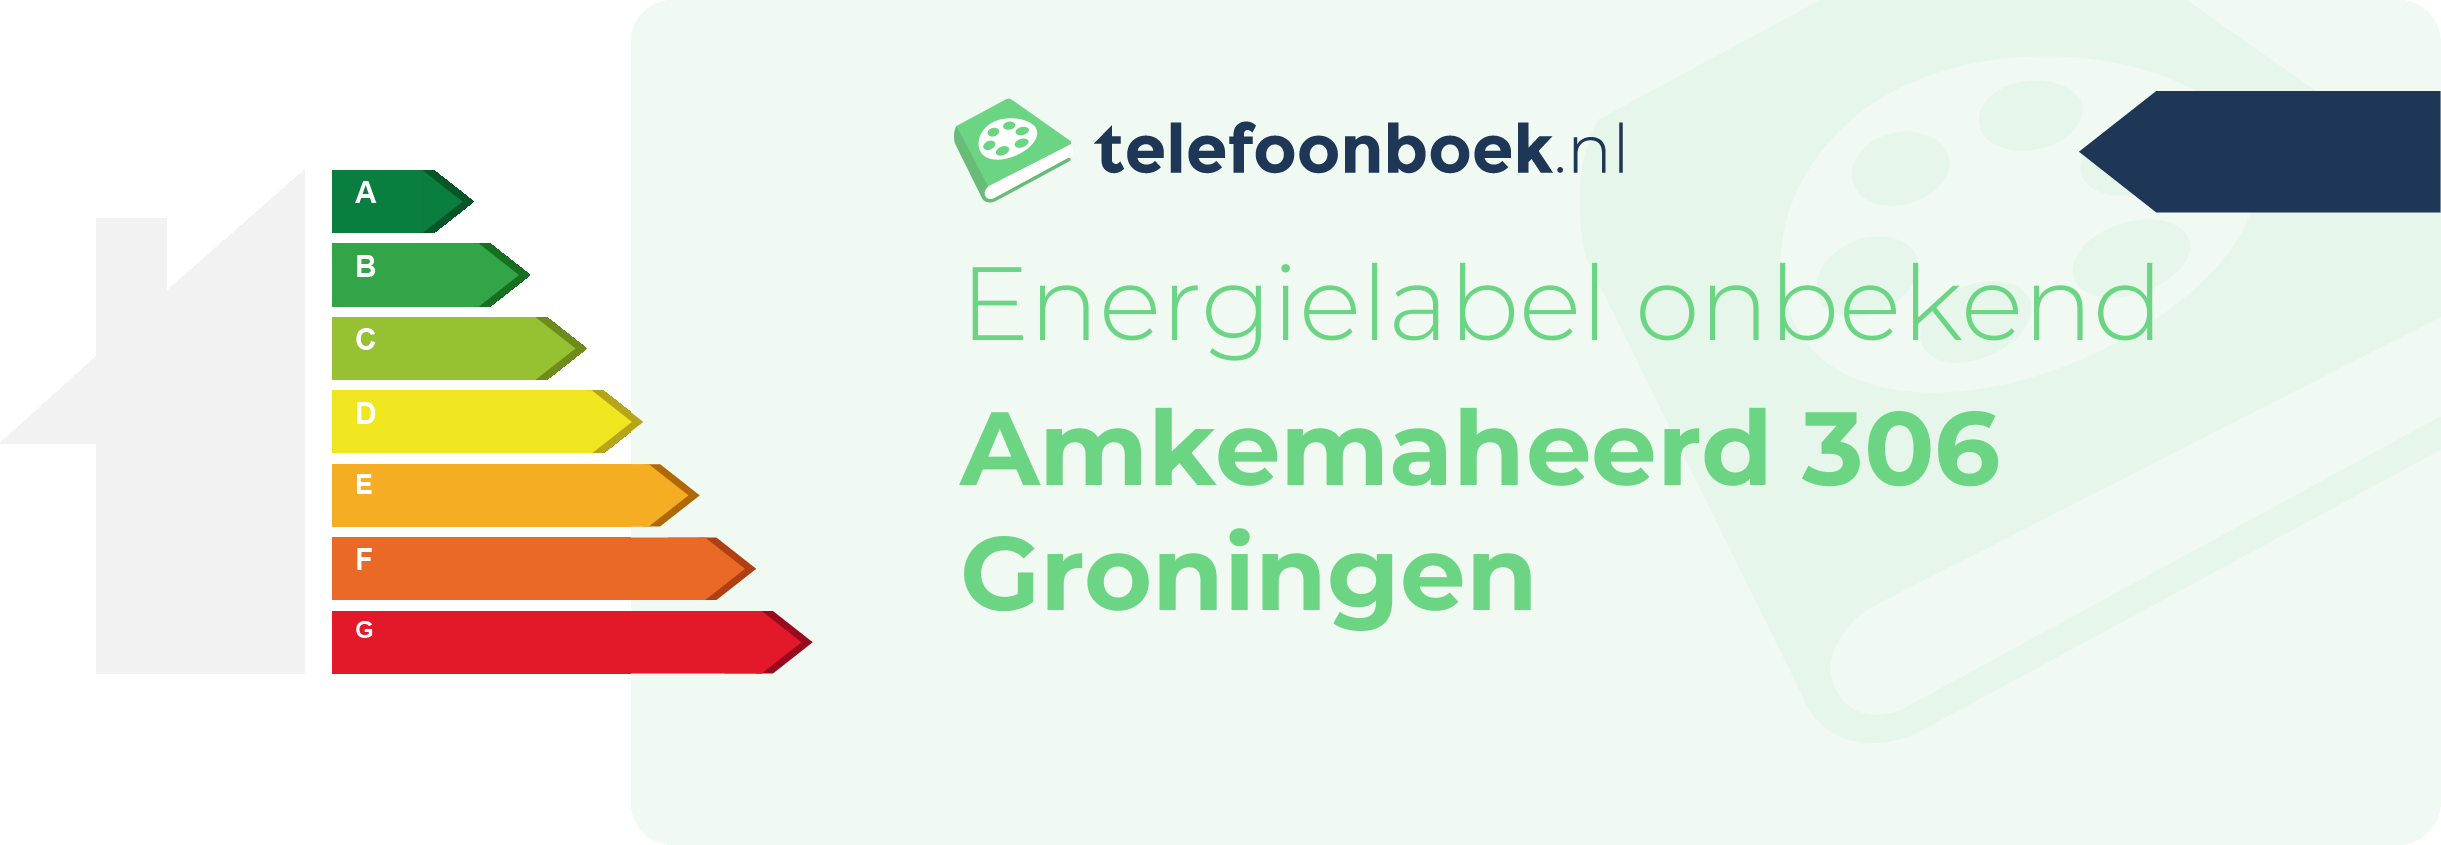 Energielabel Amkemaheerd 306 Groningen